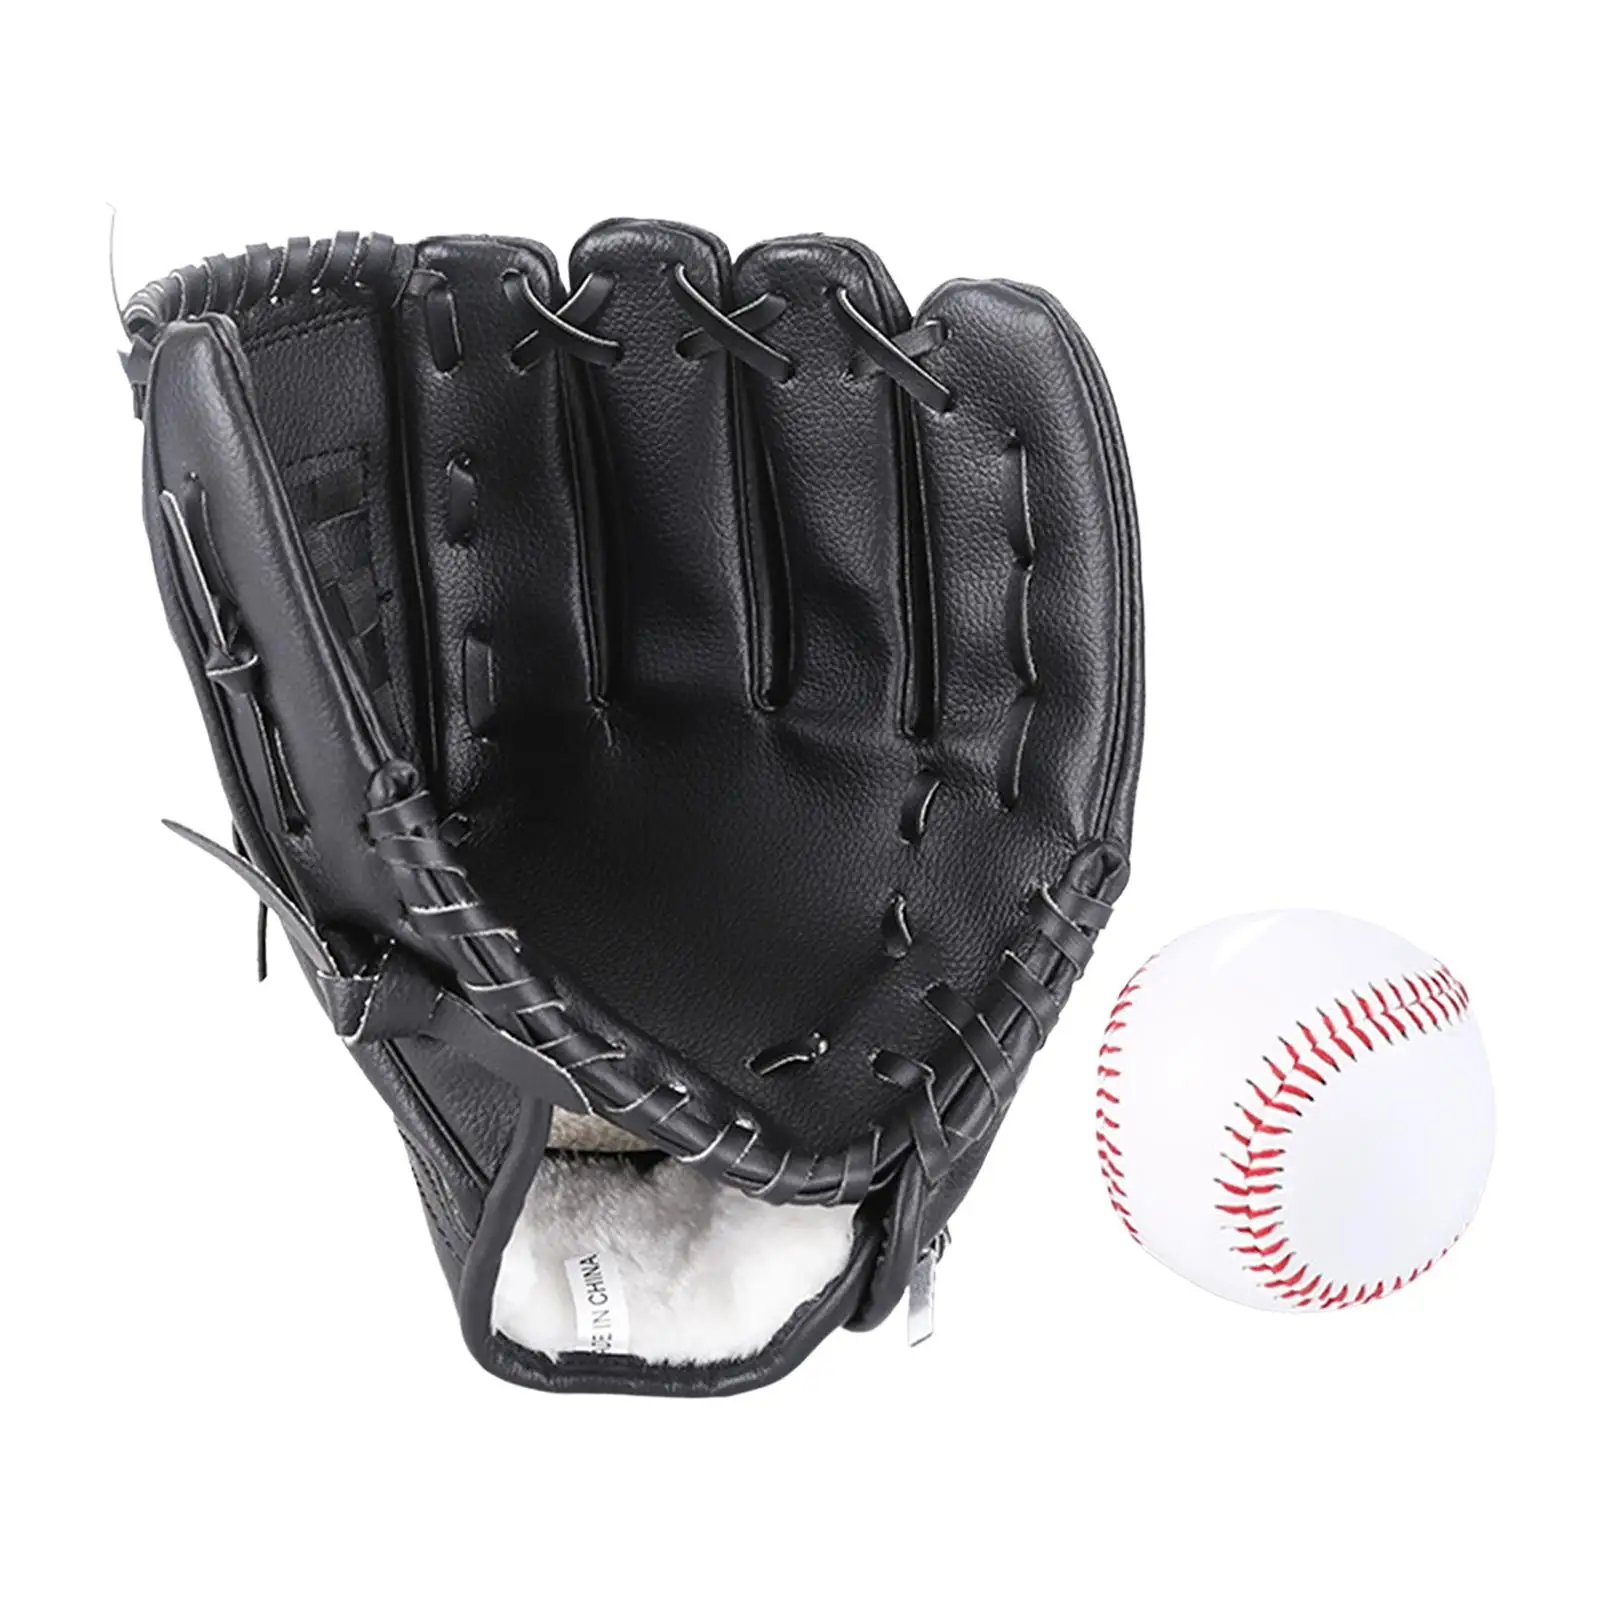 Baseball Fielding Glove and Ball Sturdy Softball Glove Accessories Reinforced Left Catcher Mitt for Outdoor Sports